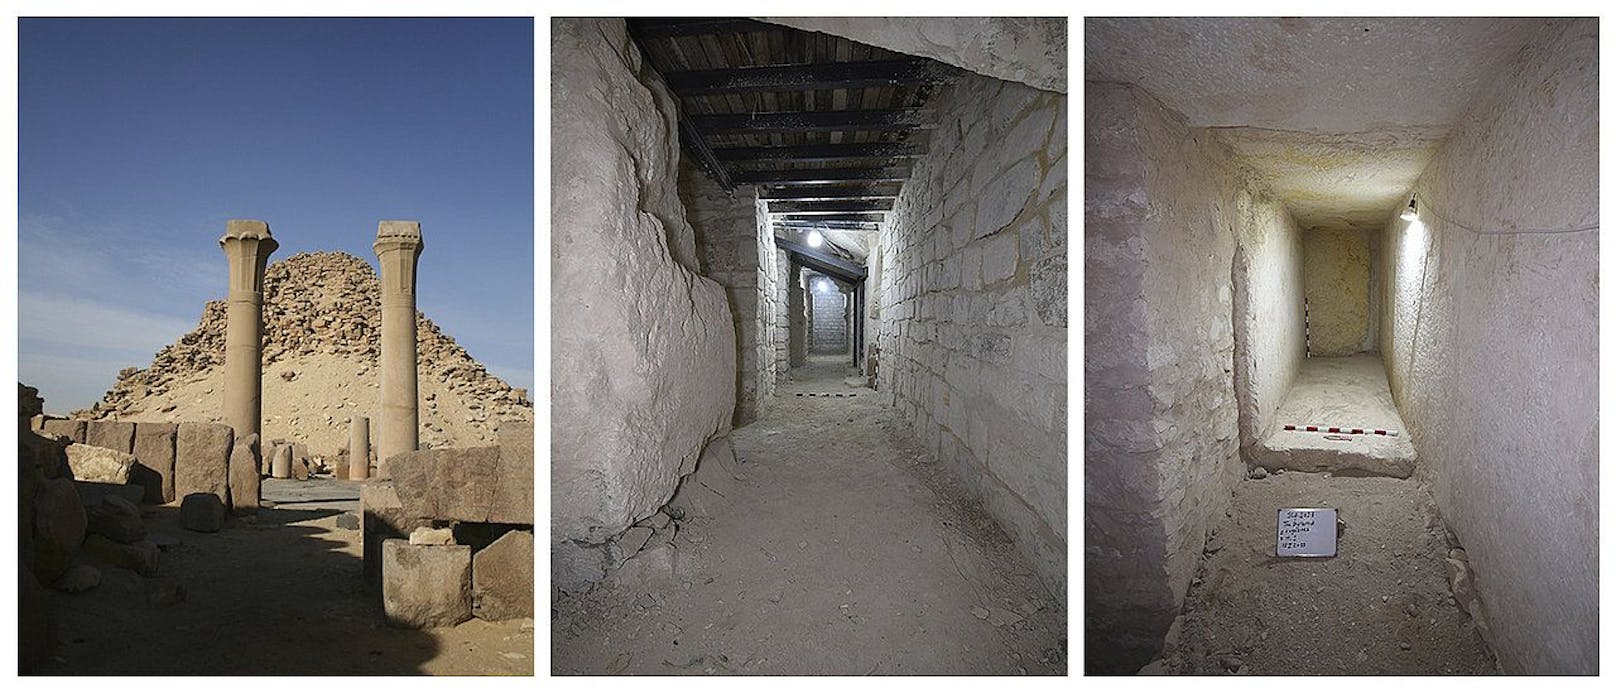 Von links nach rechts: Außenansicht der Pyramide. Ein mit Stahlträgern gesicherter Durchgang. Einer der entdeckten Lagerräume.